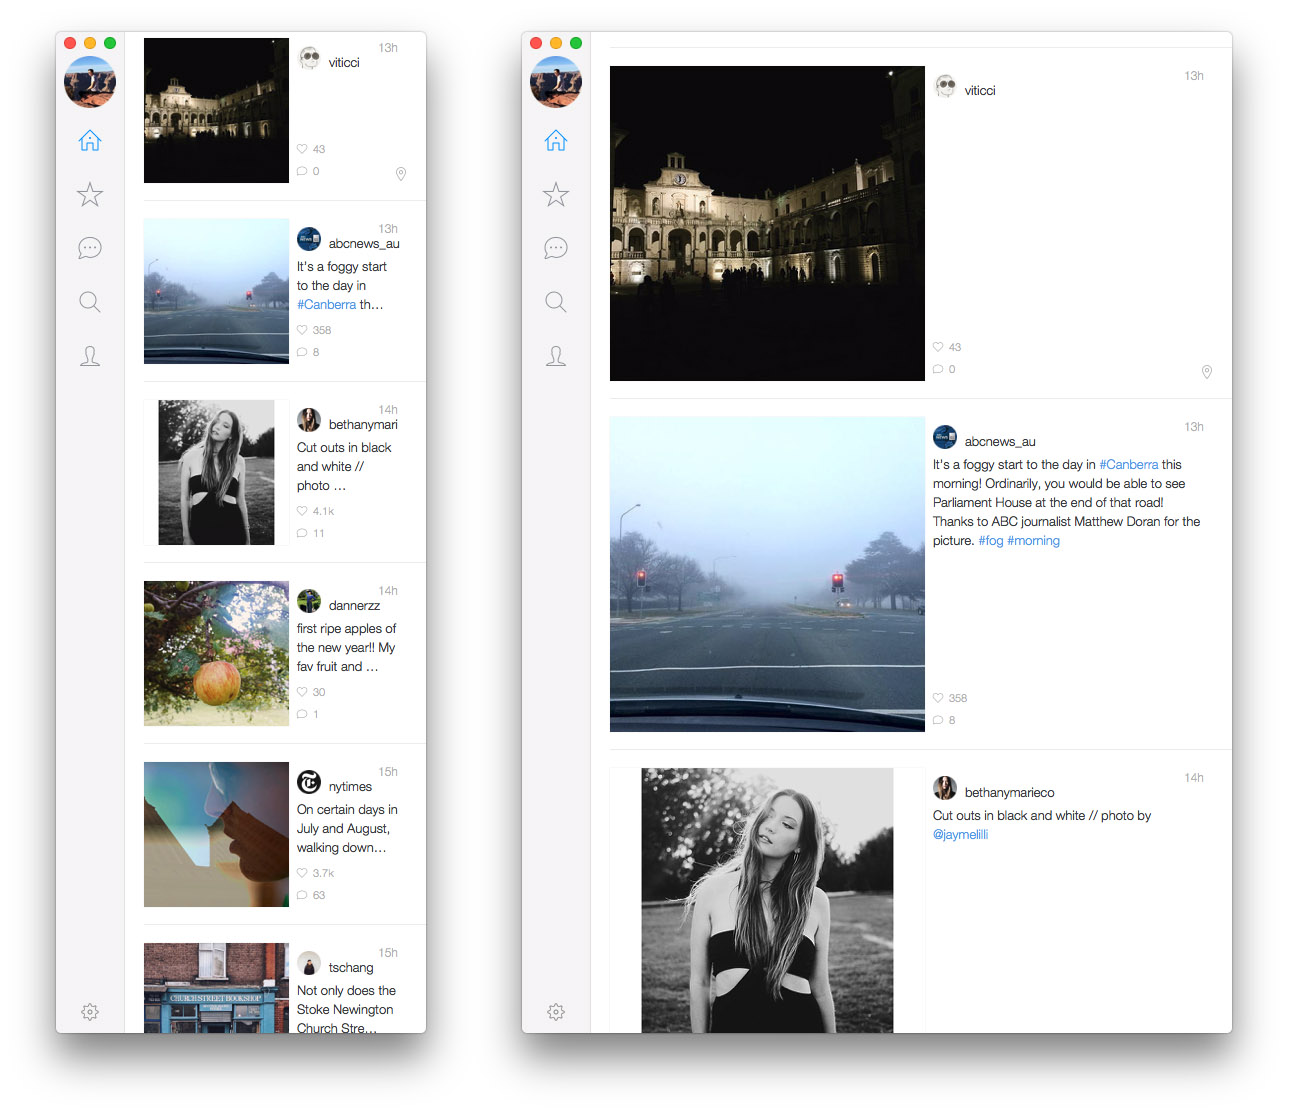 how to upload photos in instagram using macbook